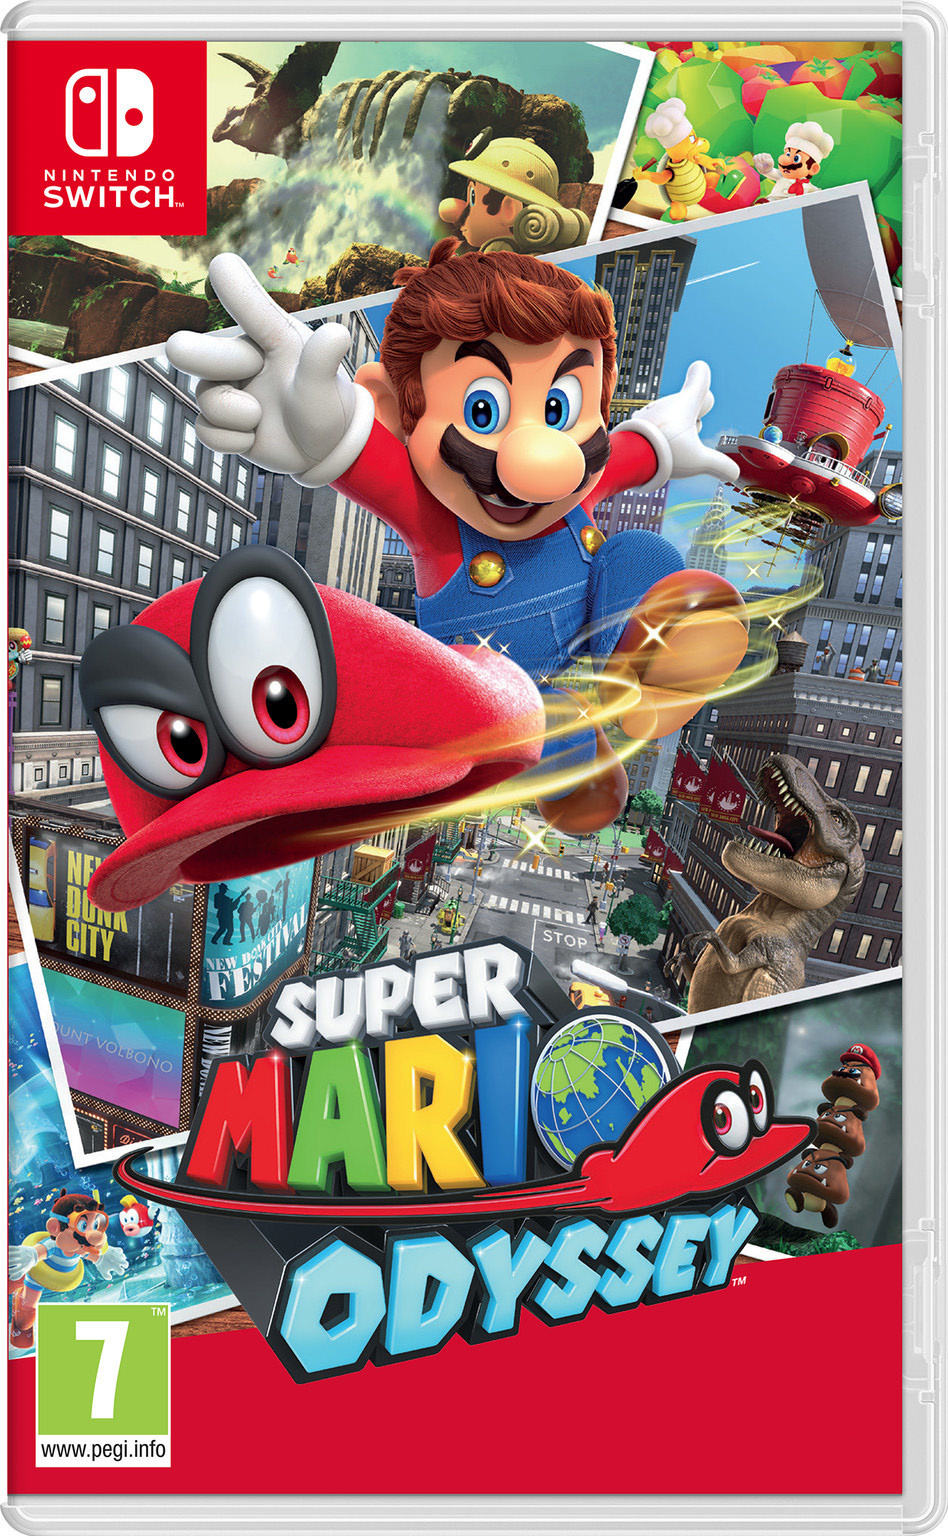 Inzet Omleiden Discriminatie Nintendo Switch Super Mario Odyssey kopen - AllYourGames.nl